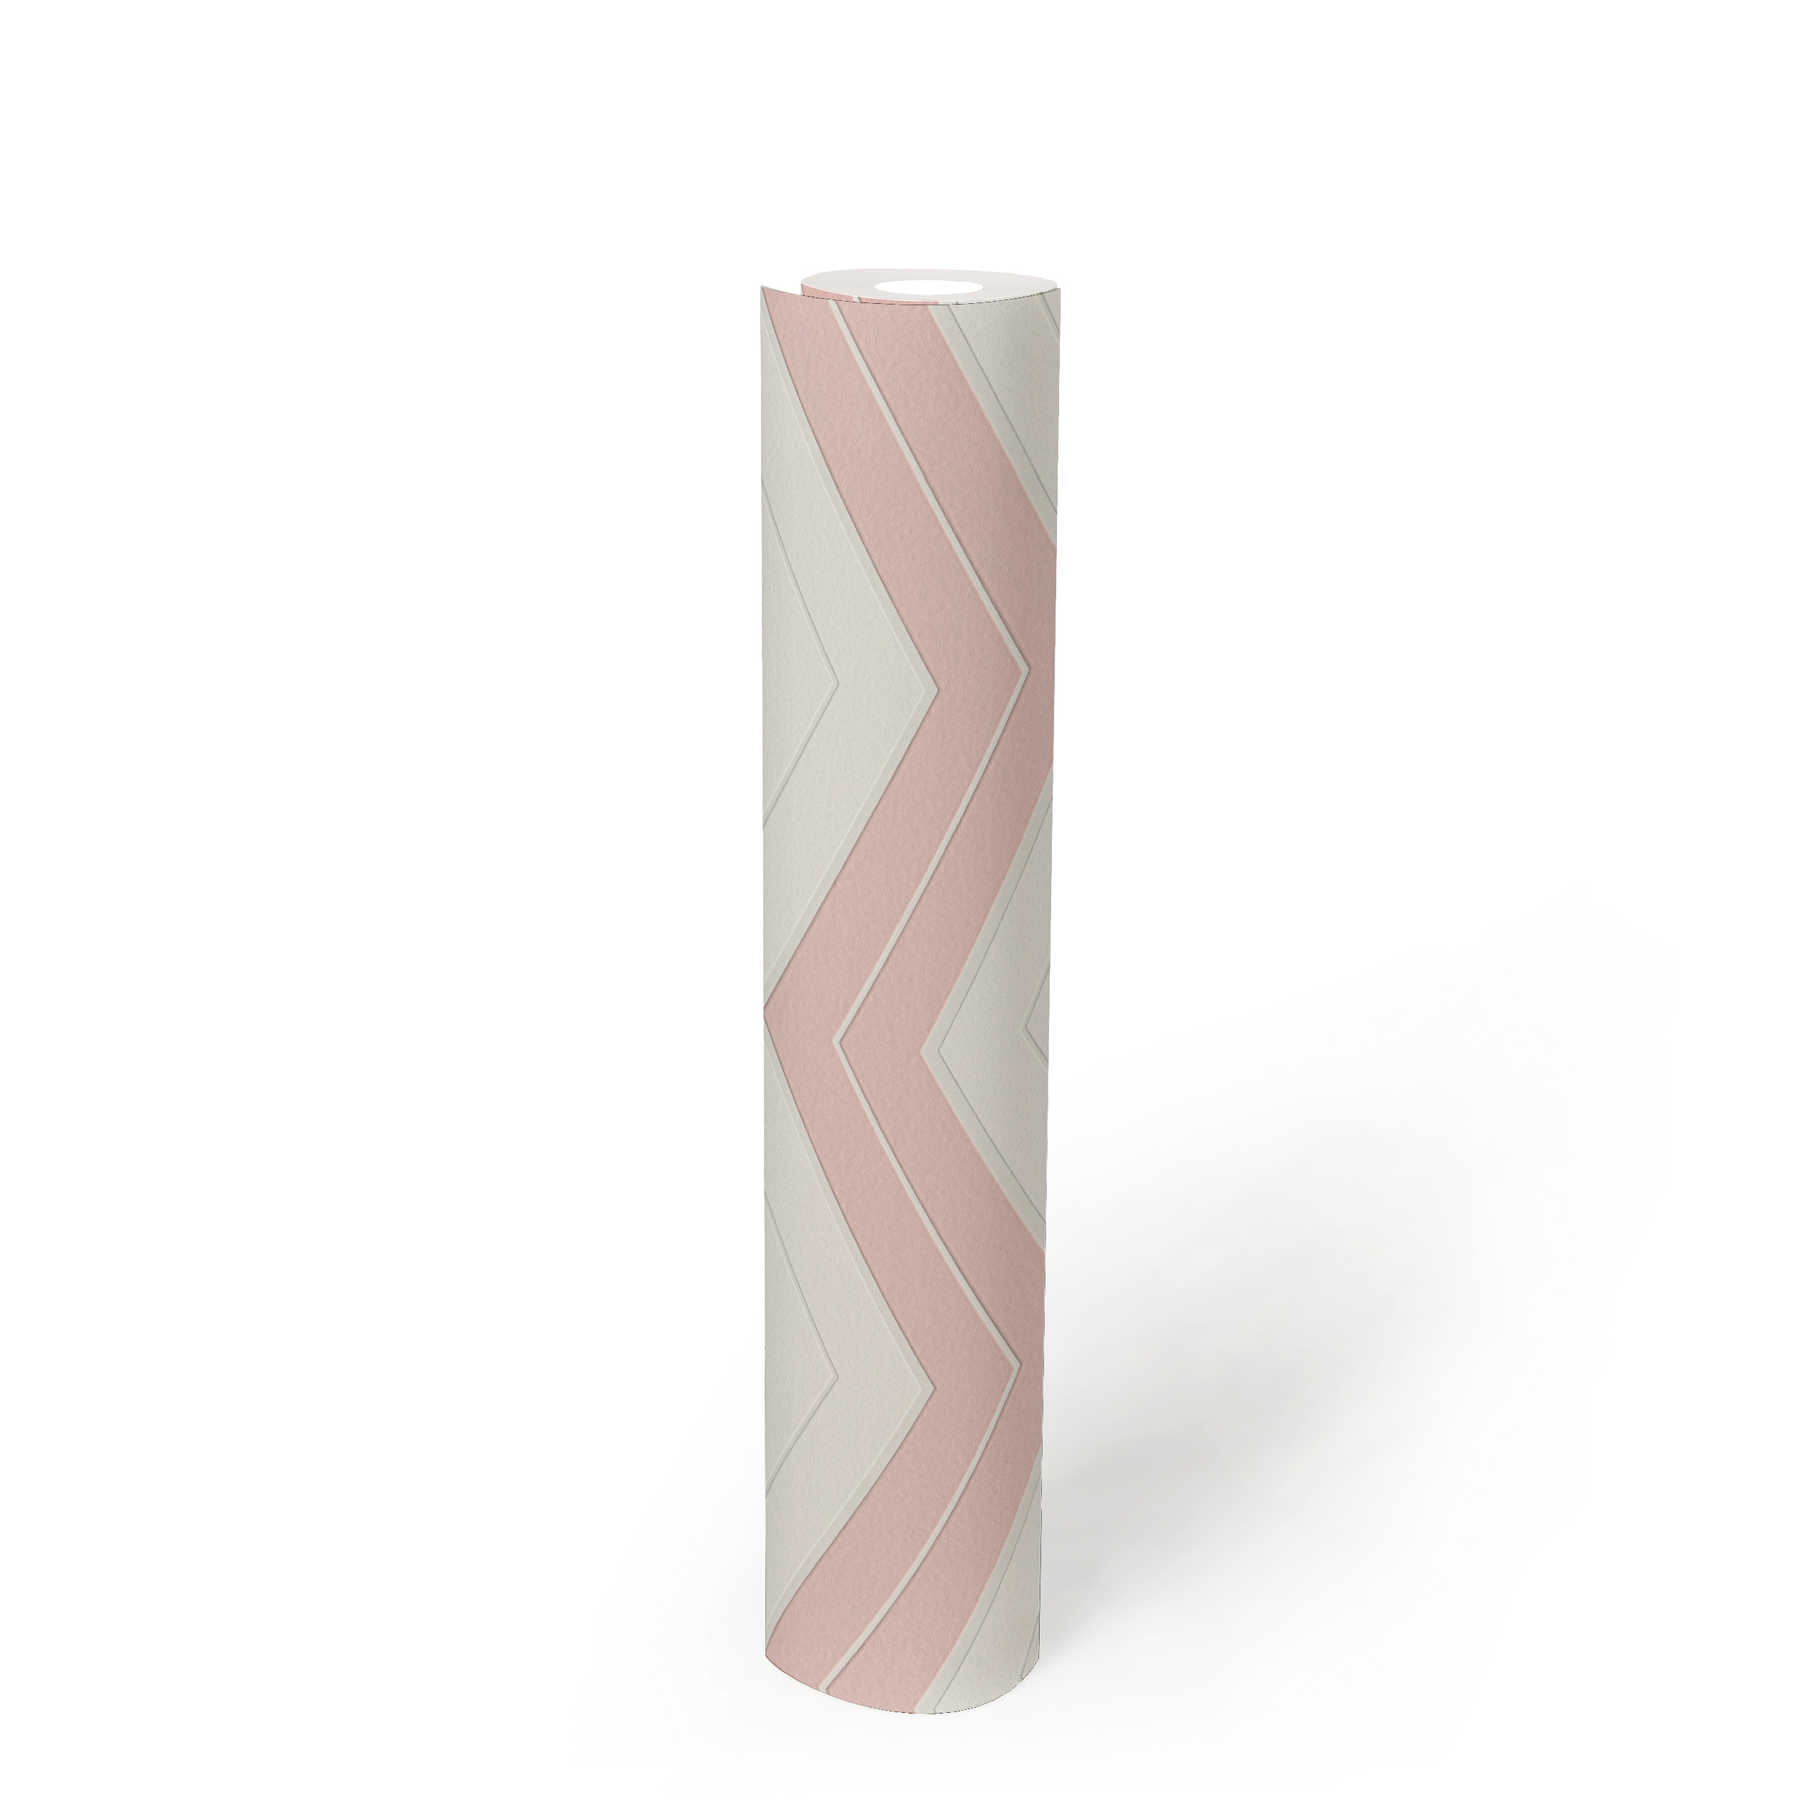             Behang met zigzaglijnen dwarsgestreept - roze, wit
        